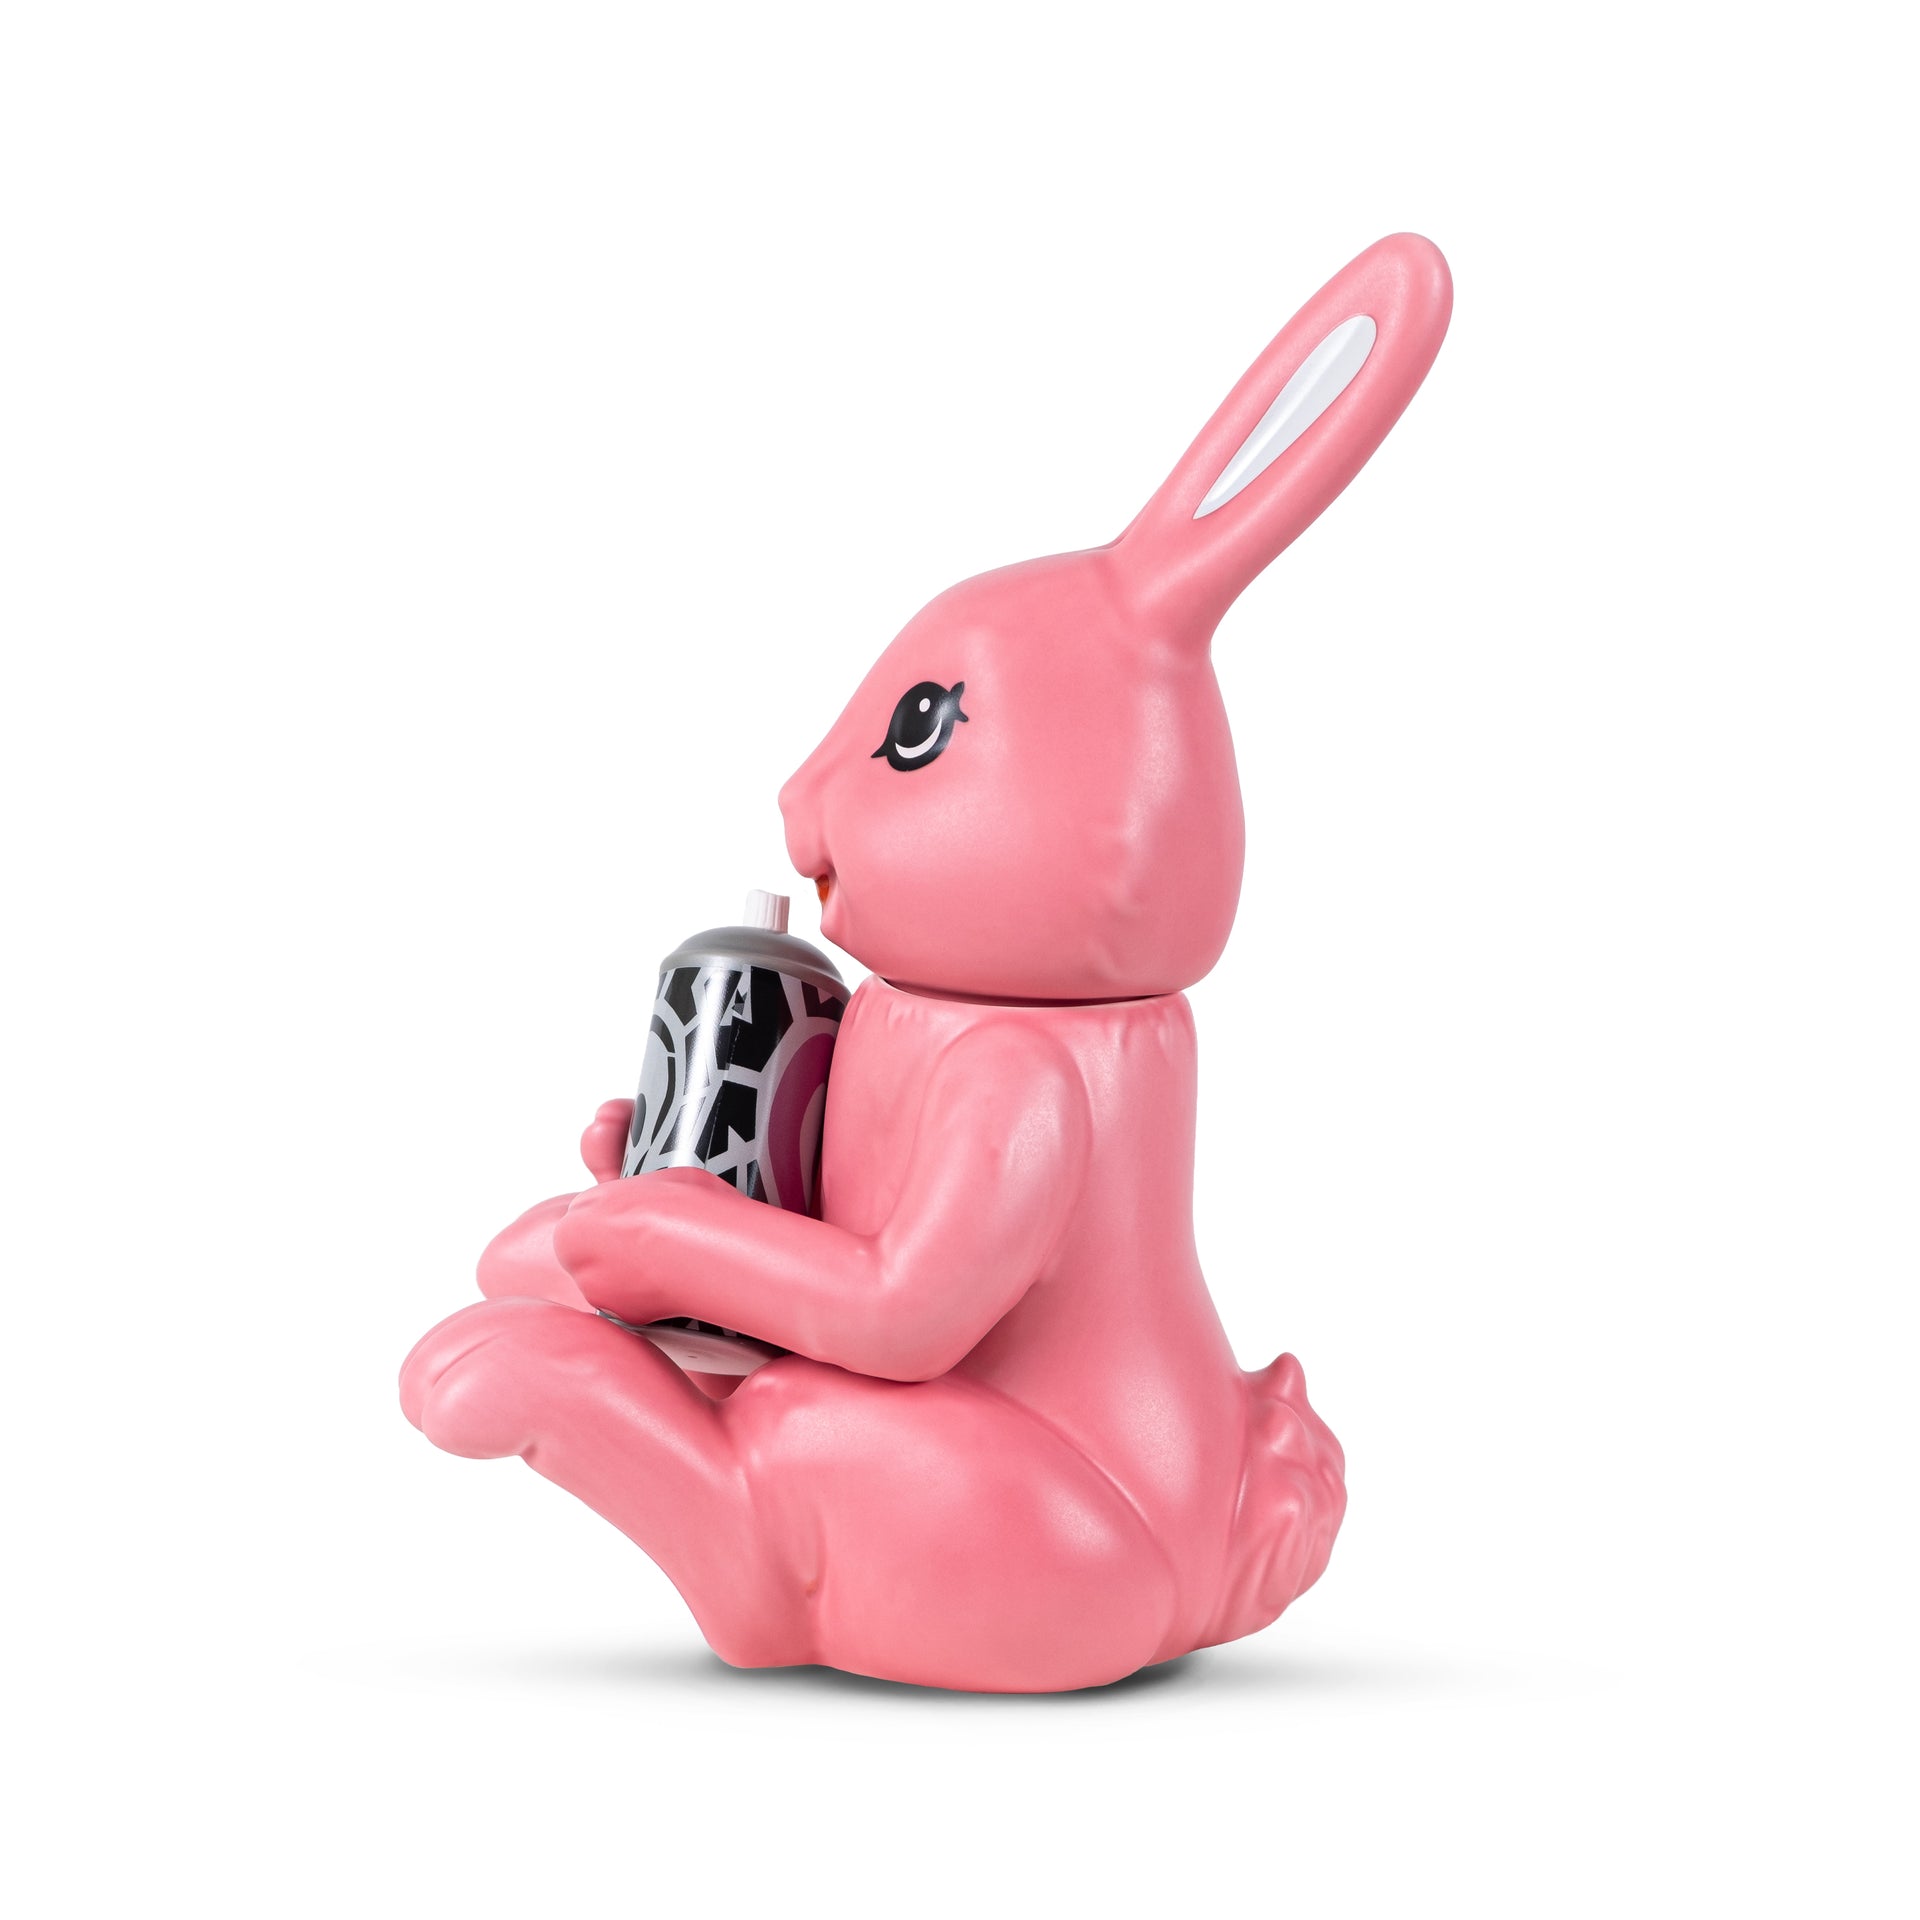 AIKO "Pink Bunny" Cookie Jar